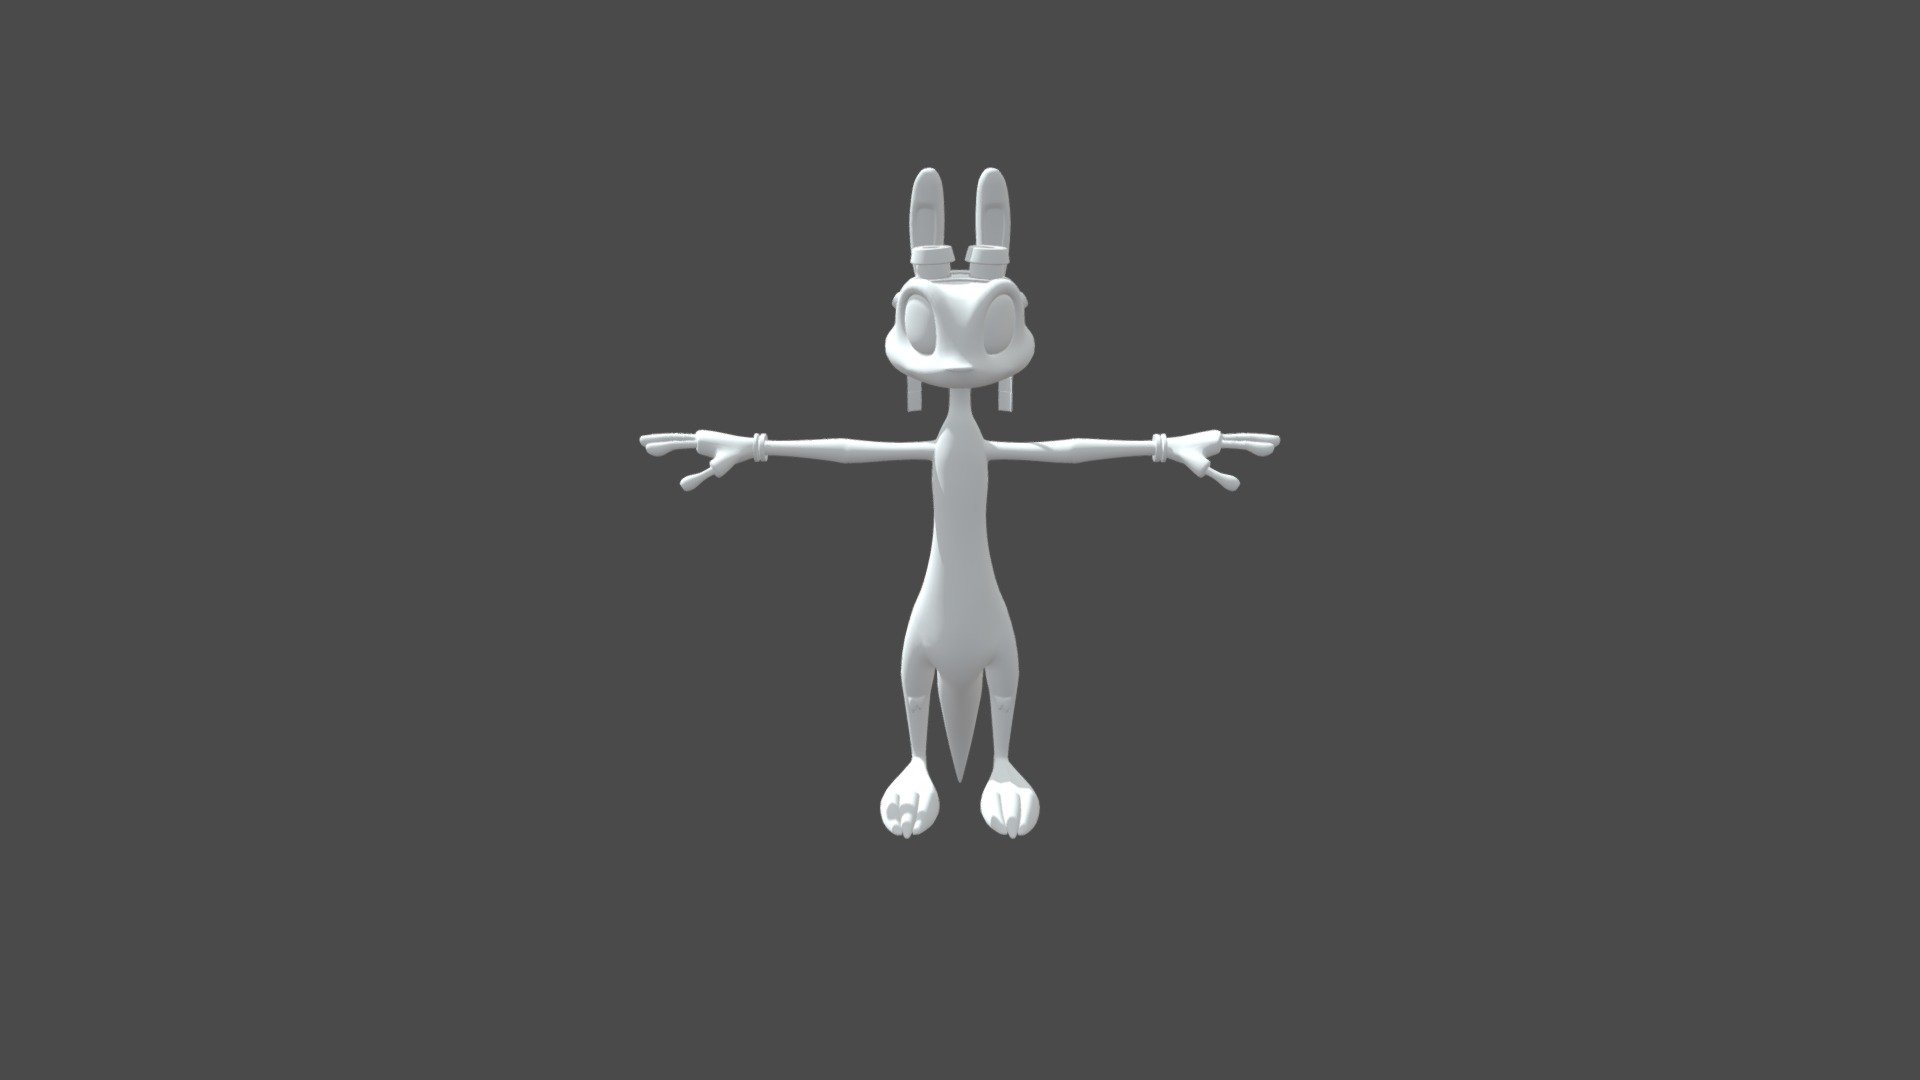 daxter - Download Free 3D model by brau_og [aba0590] - Sketchfab